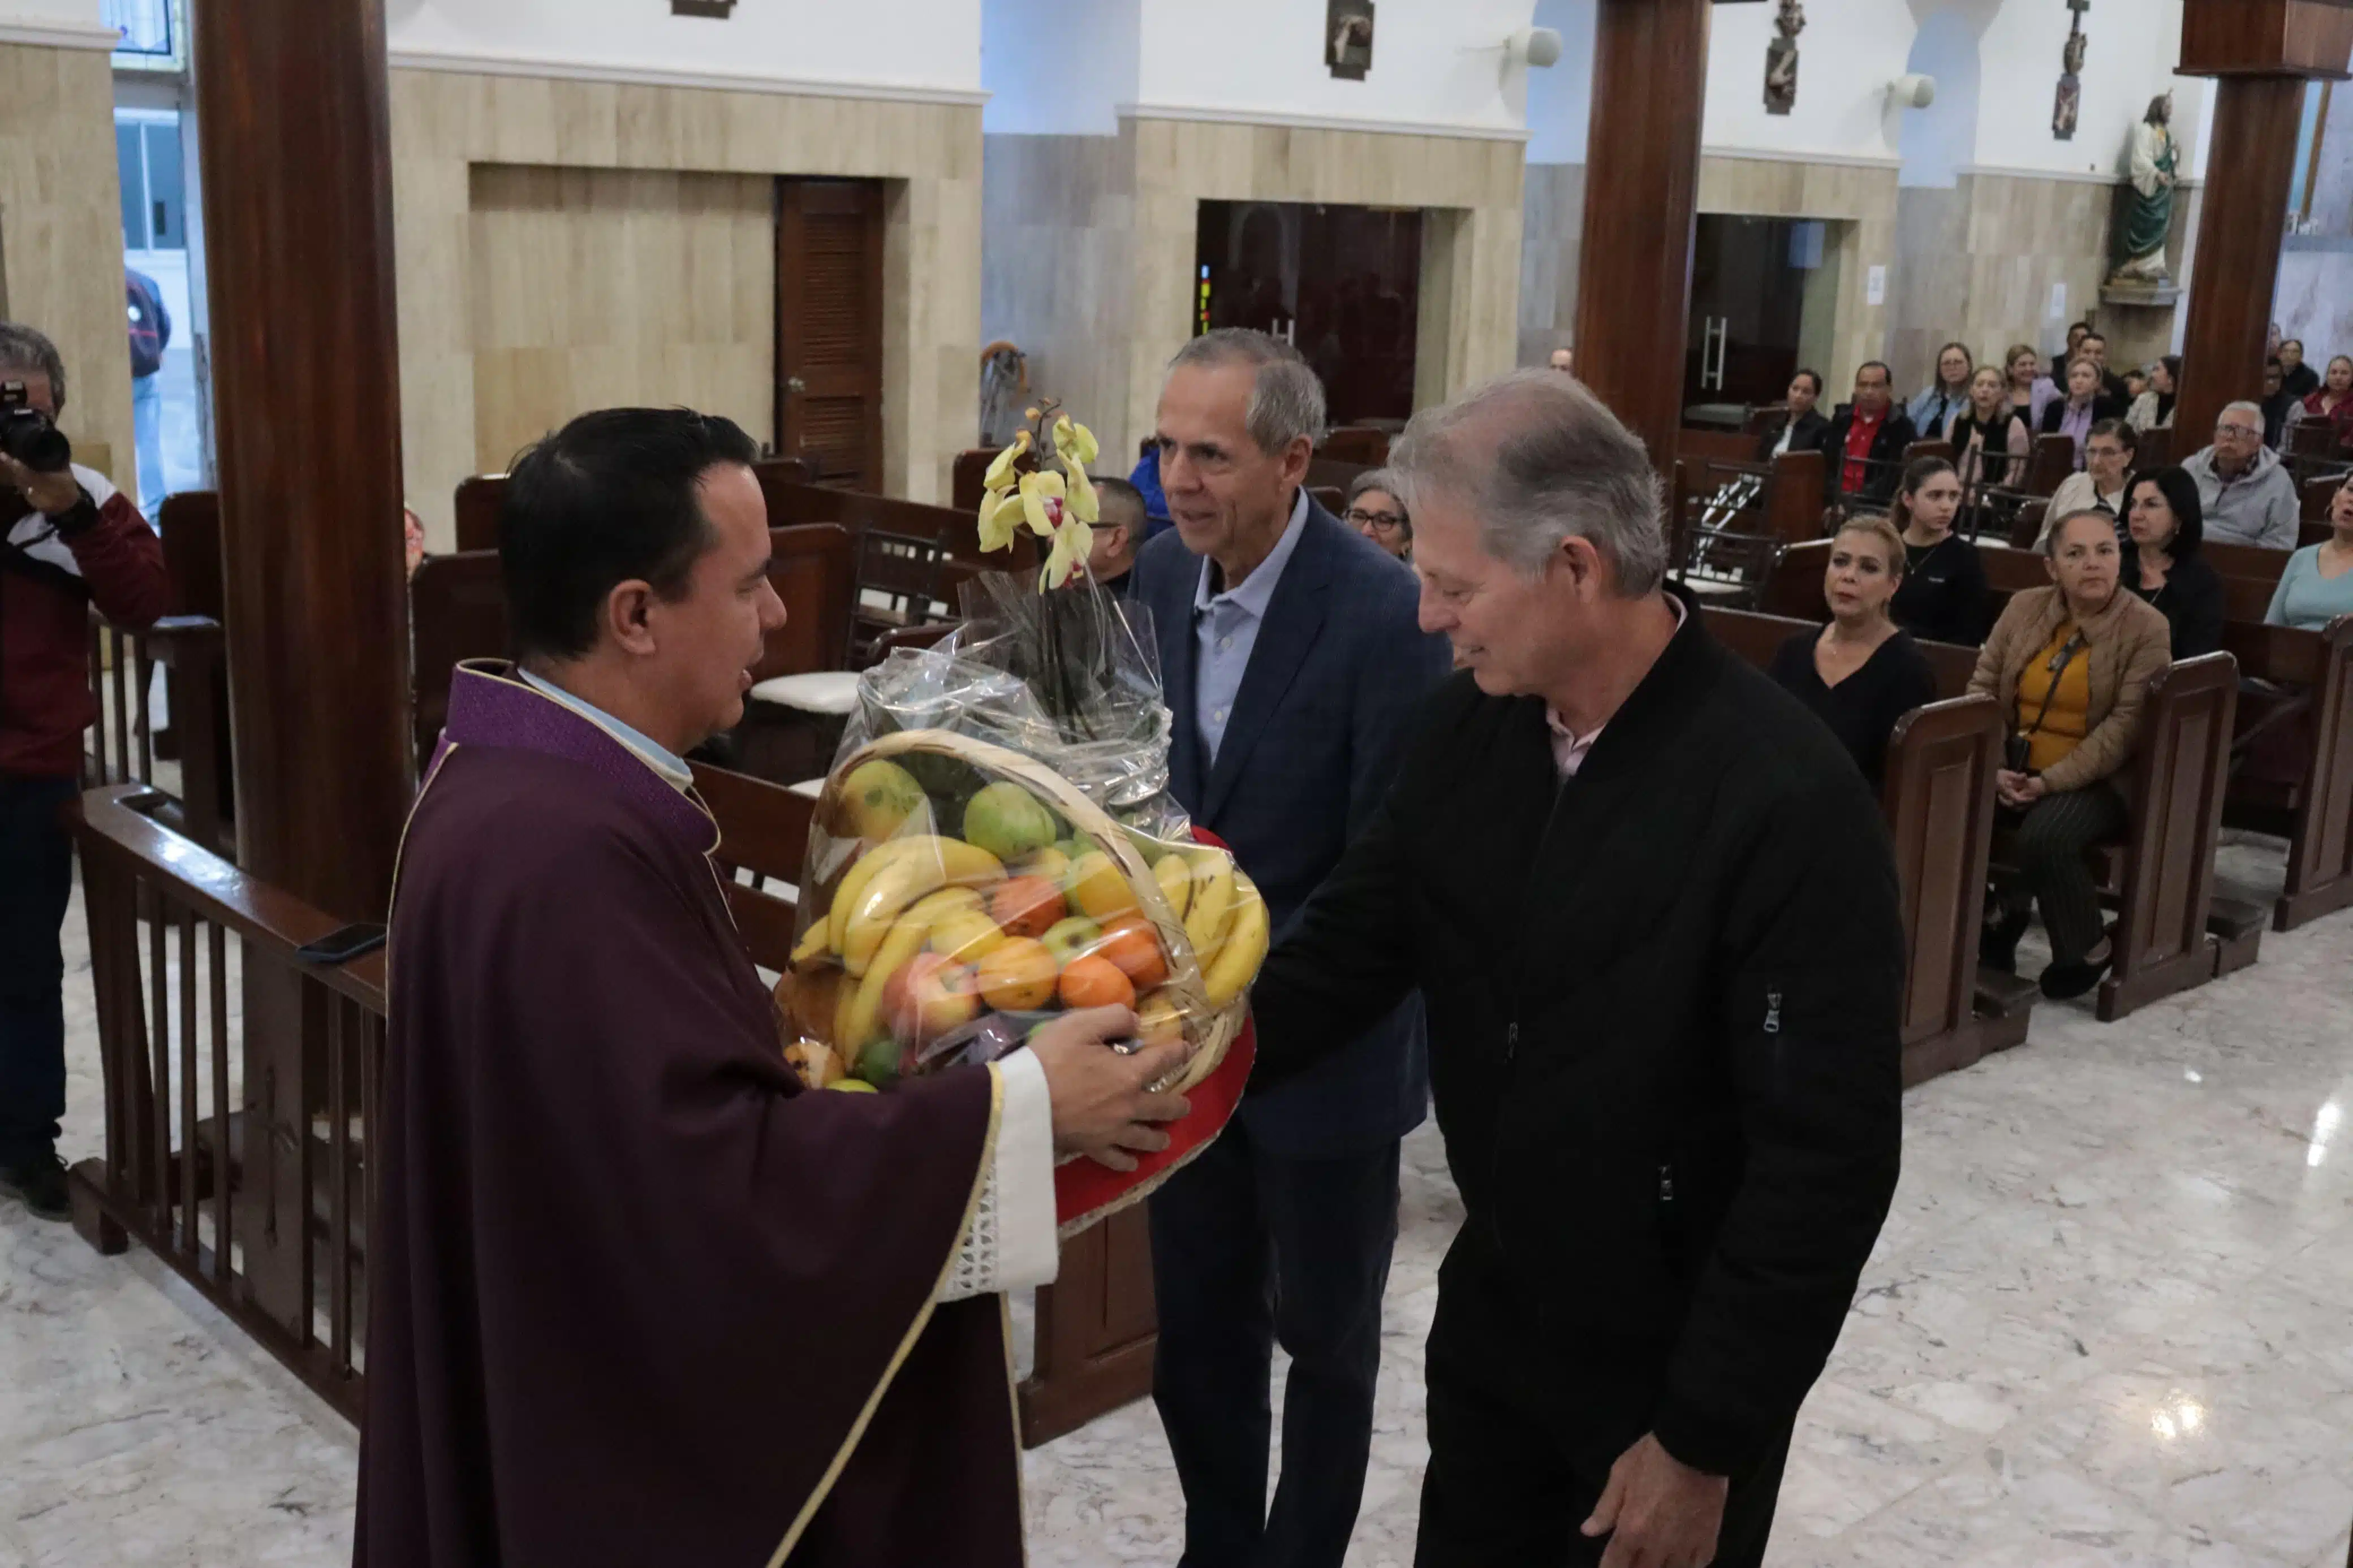 Alcalde de Ahome y funcionario entegando ofrenda a sacerdote